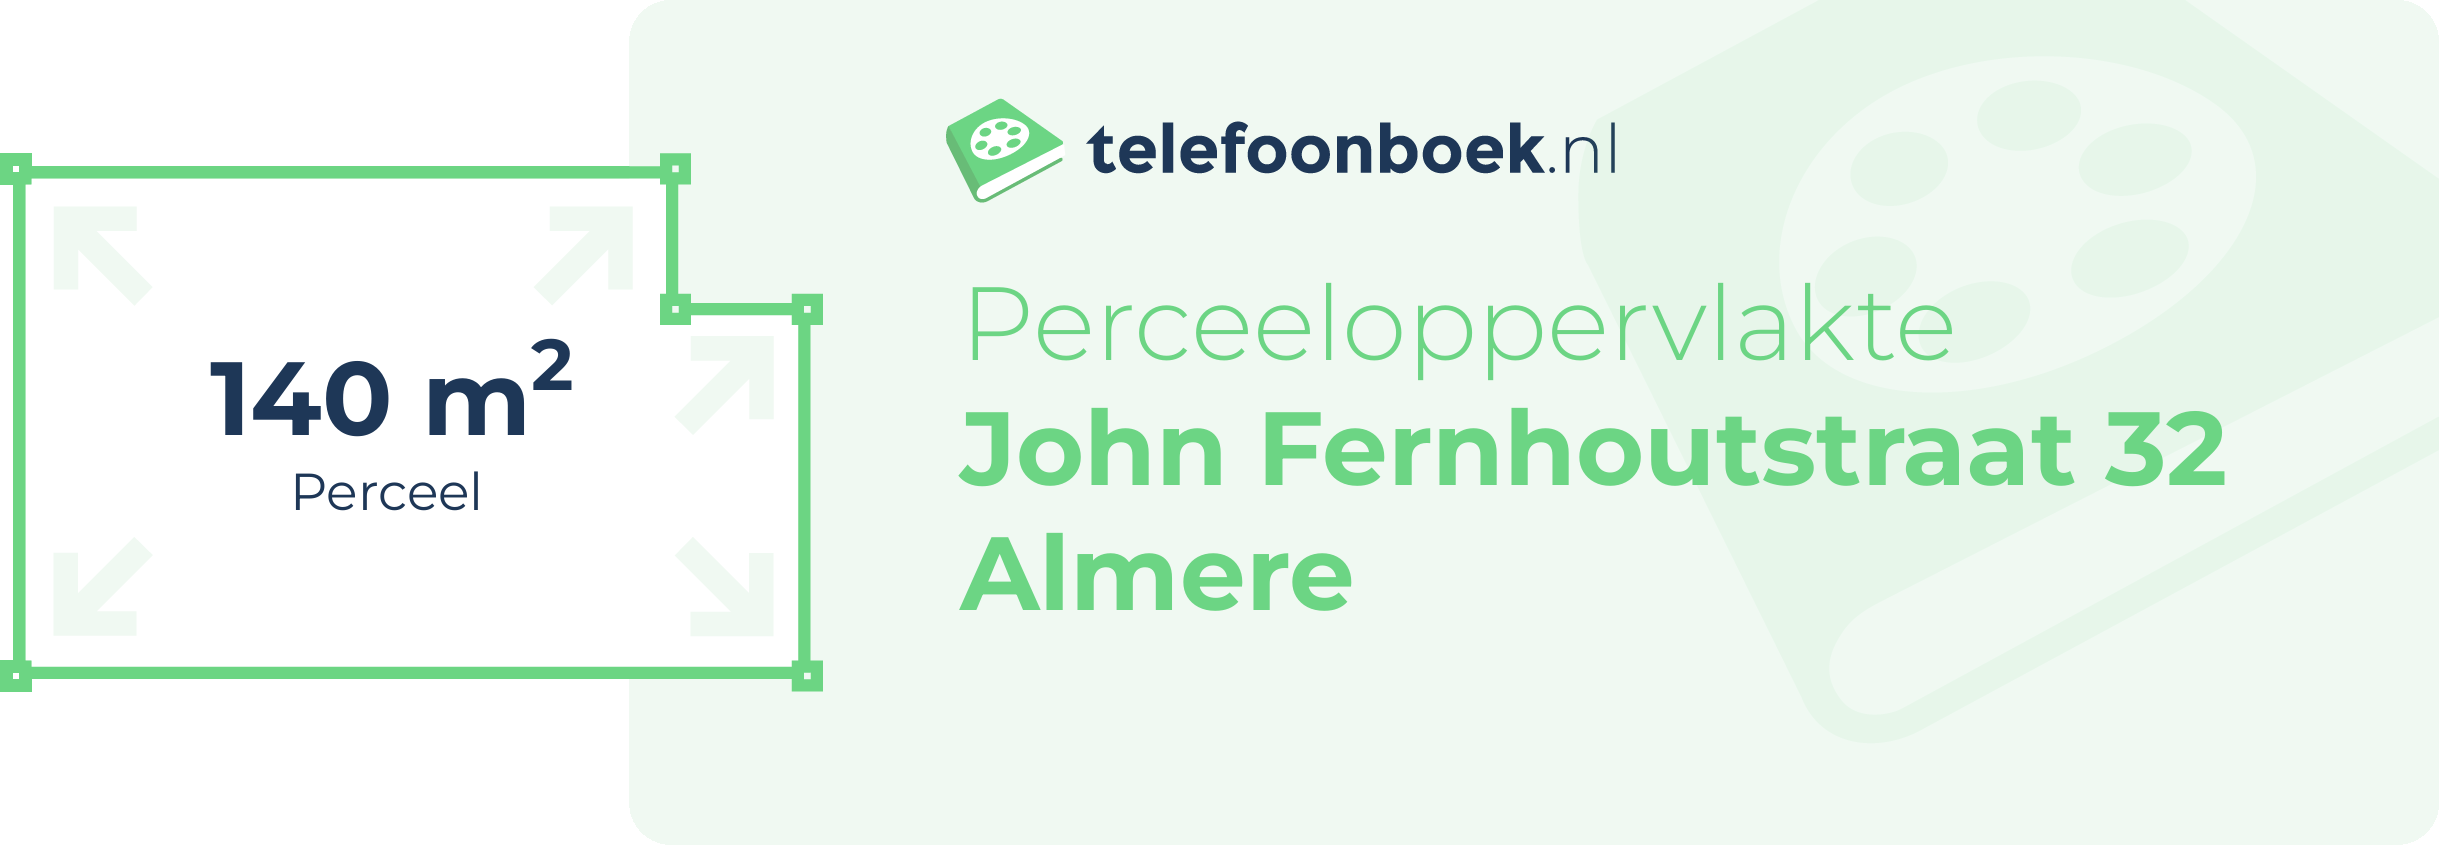 Perceeloppervlakte John Fernhoutstraat 32 Almere